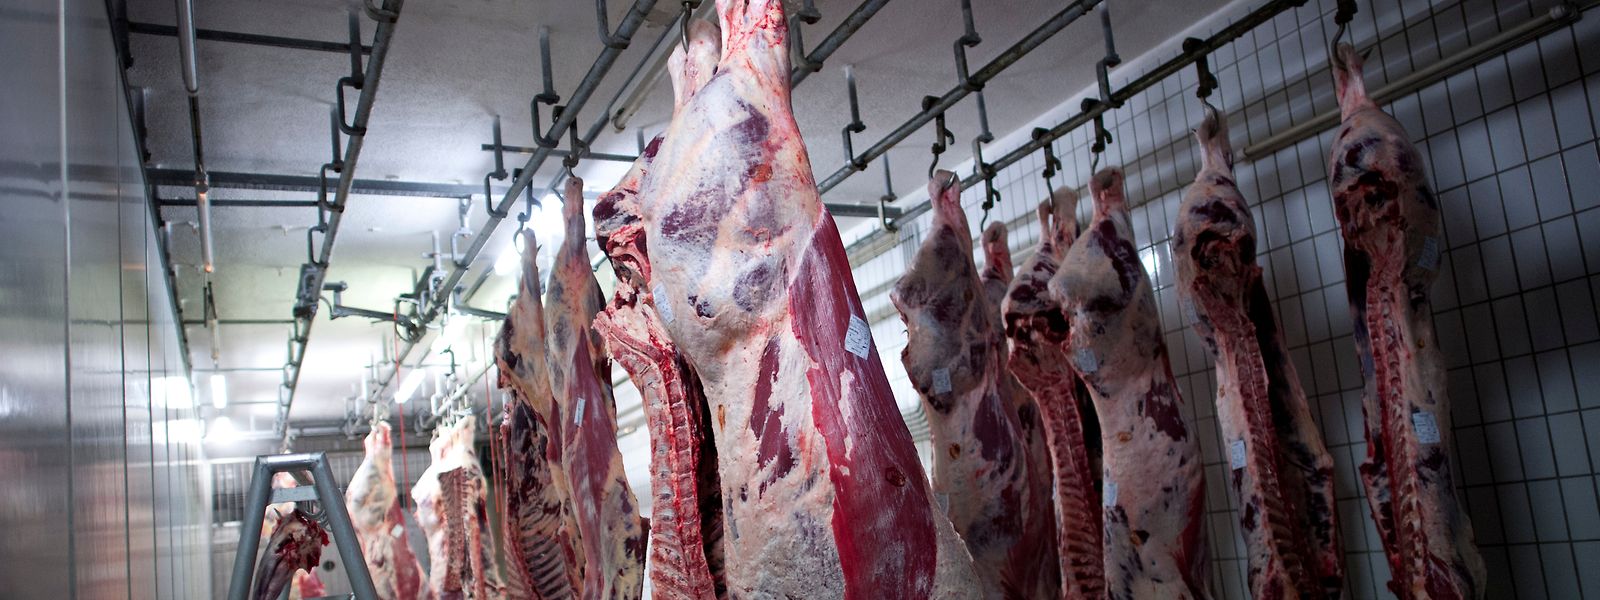 Nach vorheriger Betäubung ausgeblutete Rinder hängen in einem Kühlraum eines Schlachthofs.